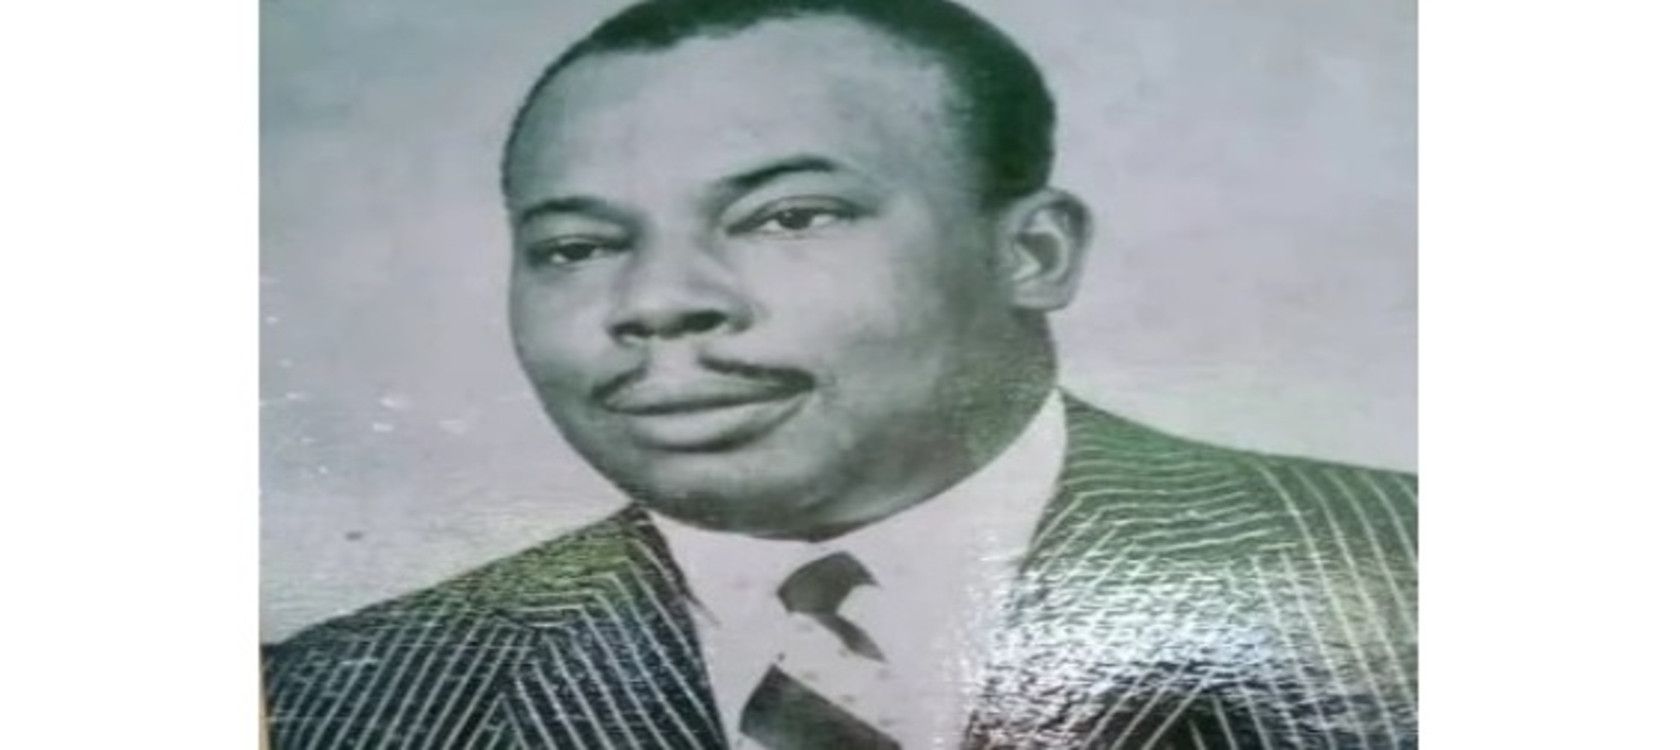 Marigot Mbouah Marcel Président de l'assemblée fédérale du cameroun.